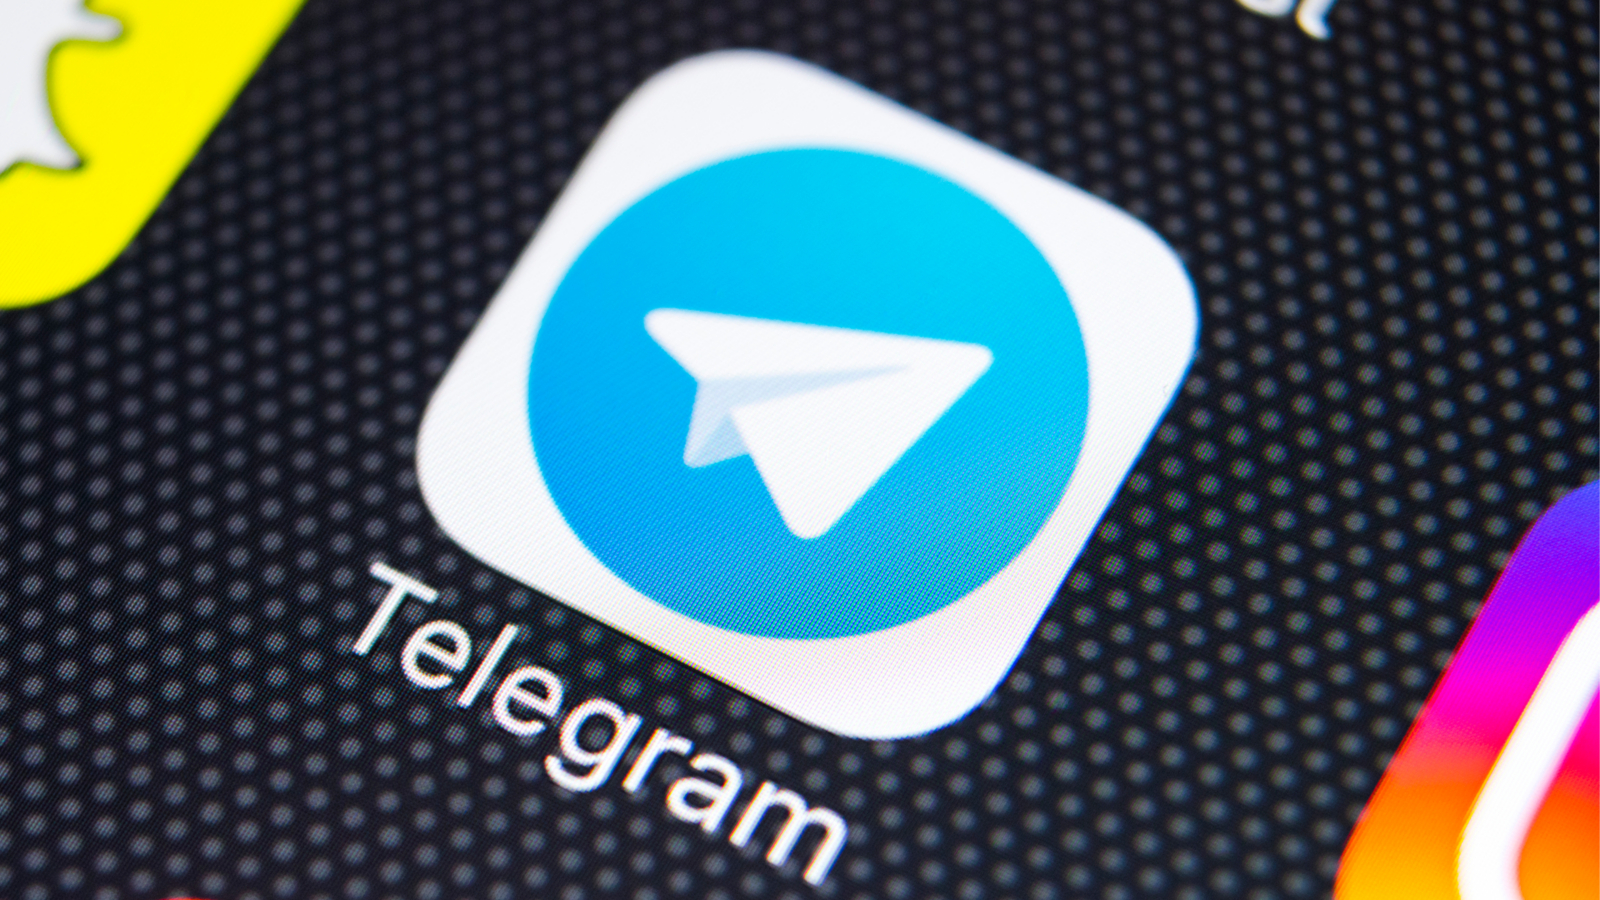 Telegram attaque Apple à la Commission européenne pour pratiques anticoncurrentielles